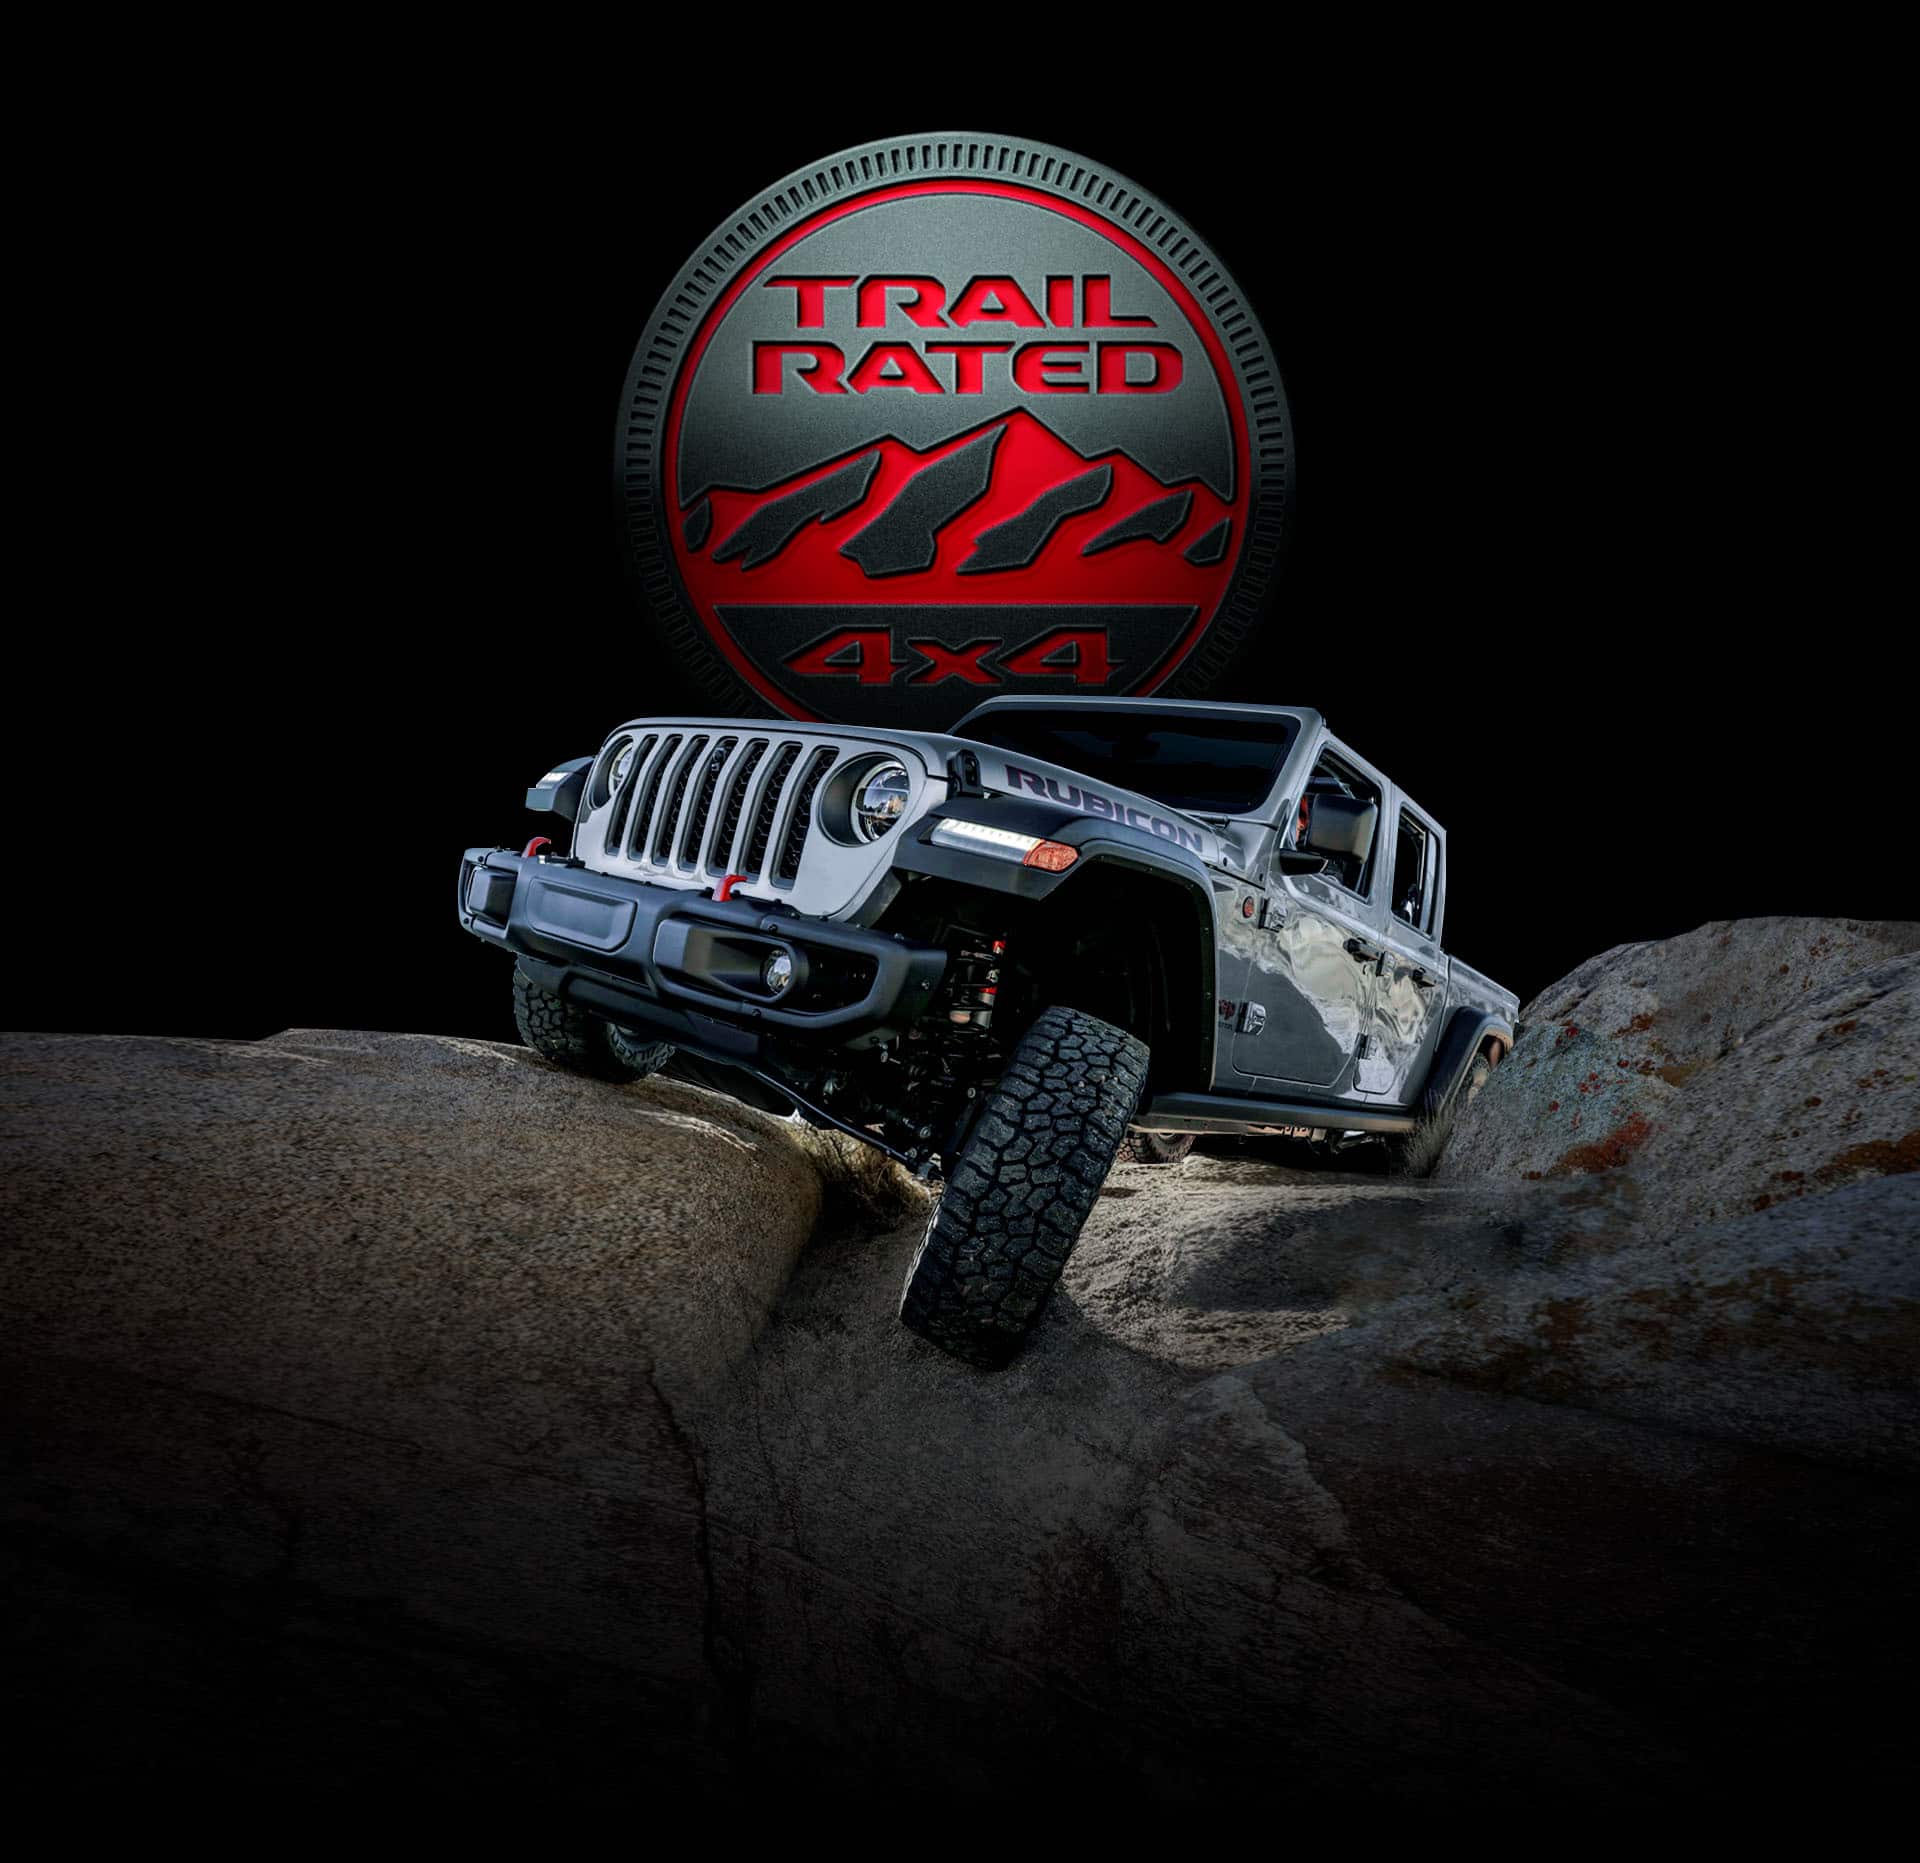 Trail Rated 4x4. La Jeep Gladiator Rubicon 2022 transitando sobre un terreno rocoso con una rueda elevada mientras sube una roca.